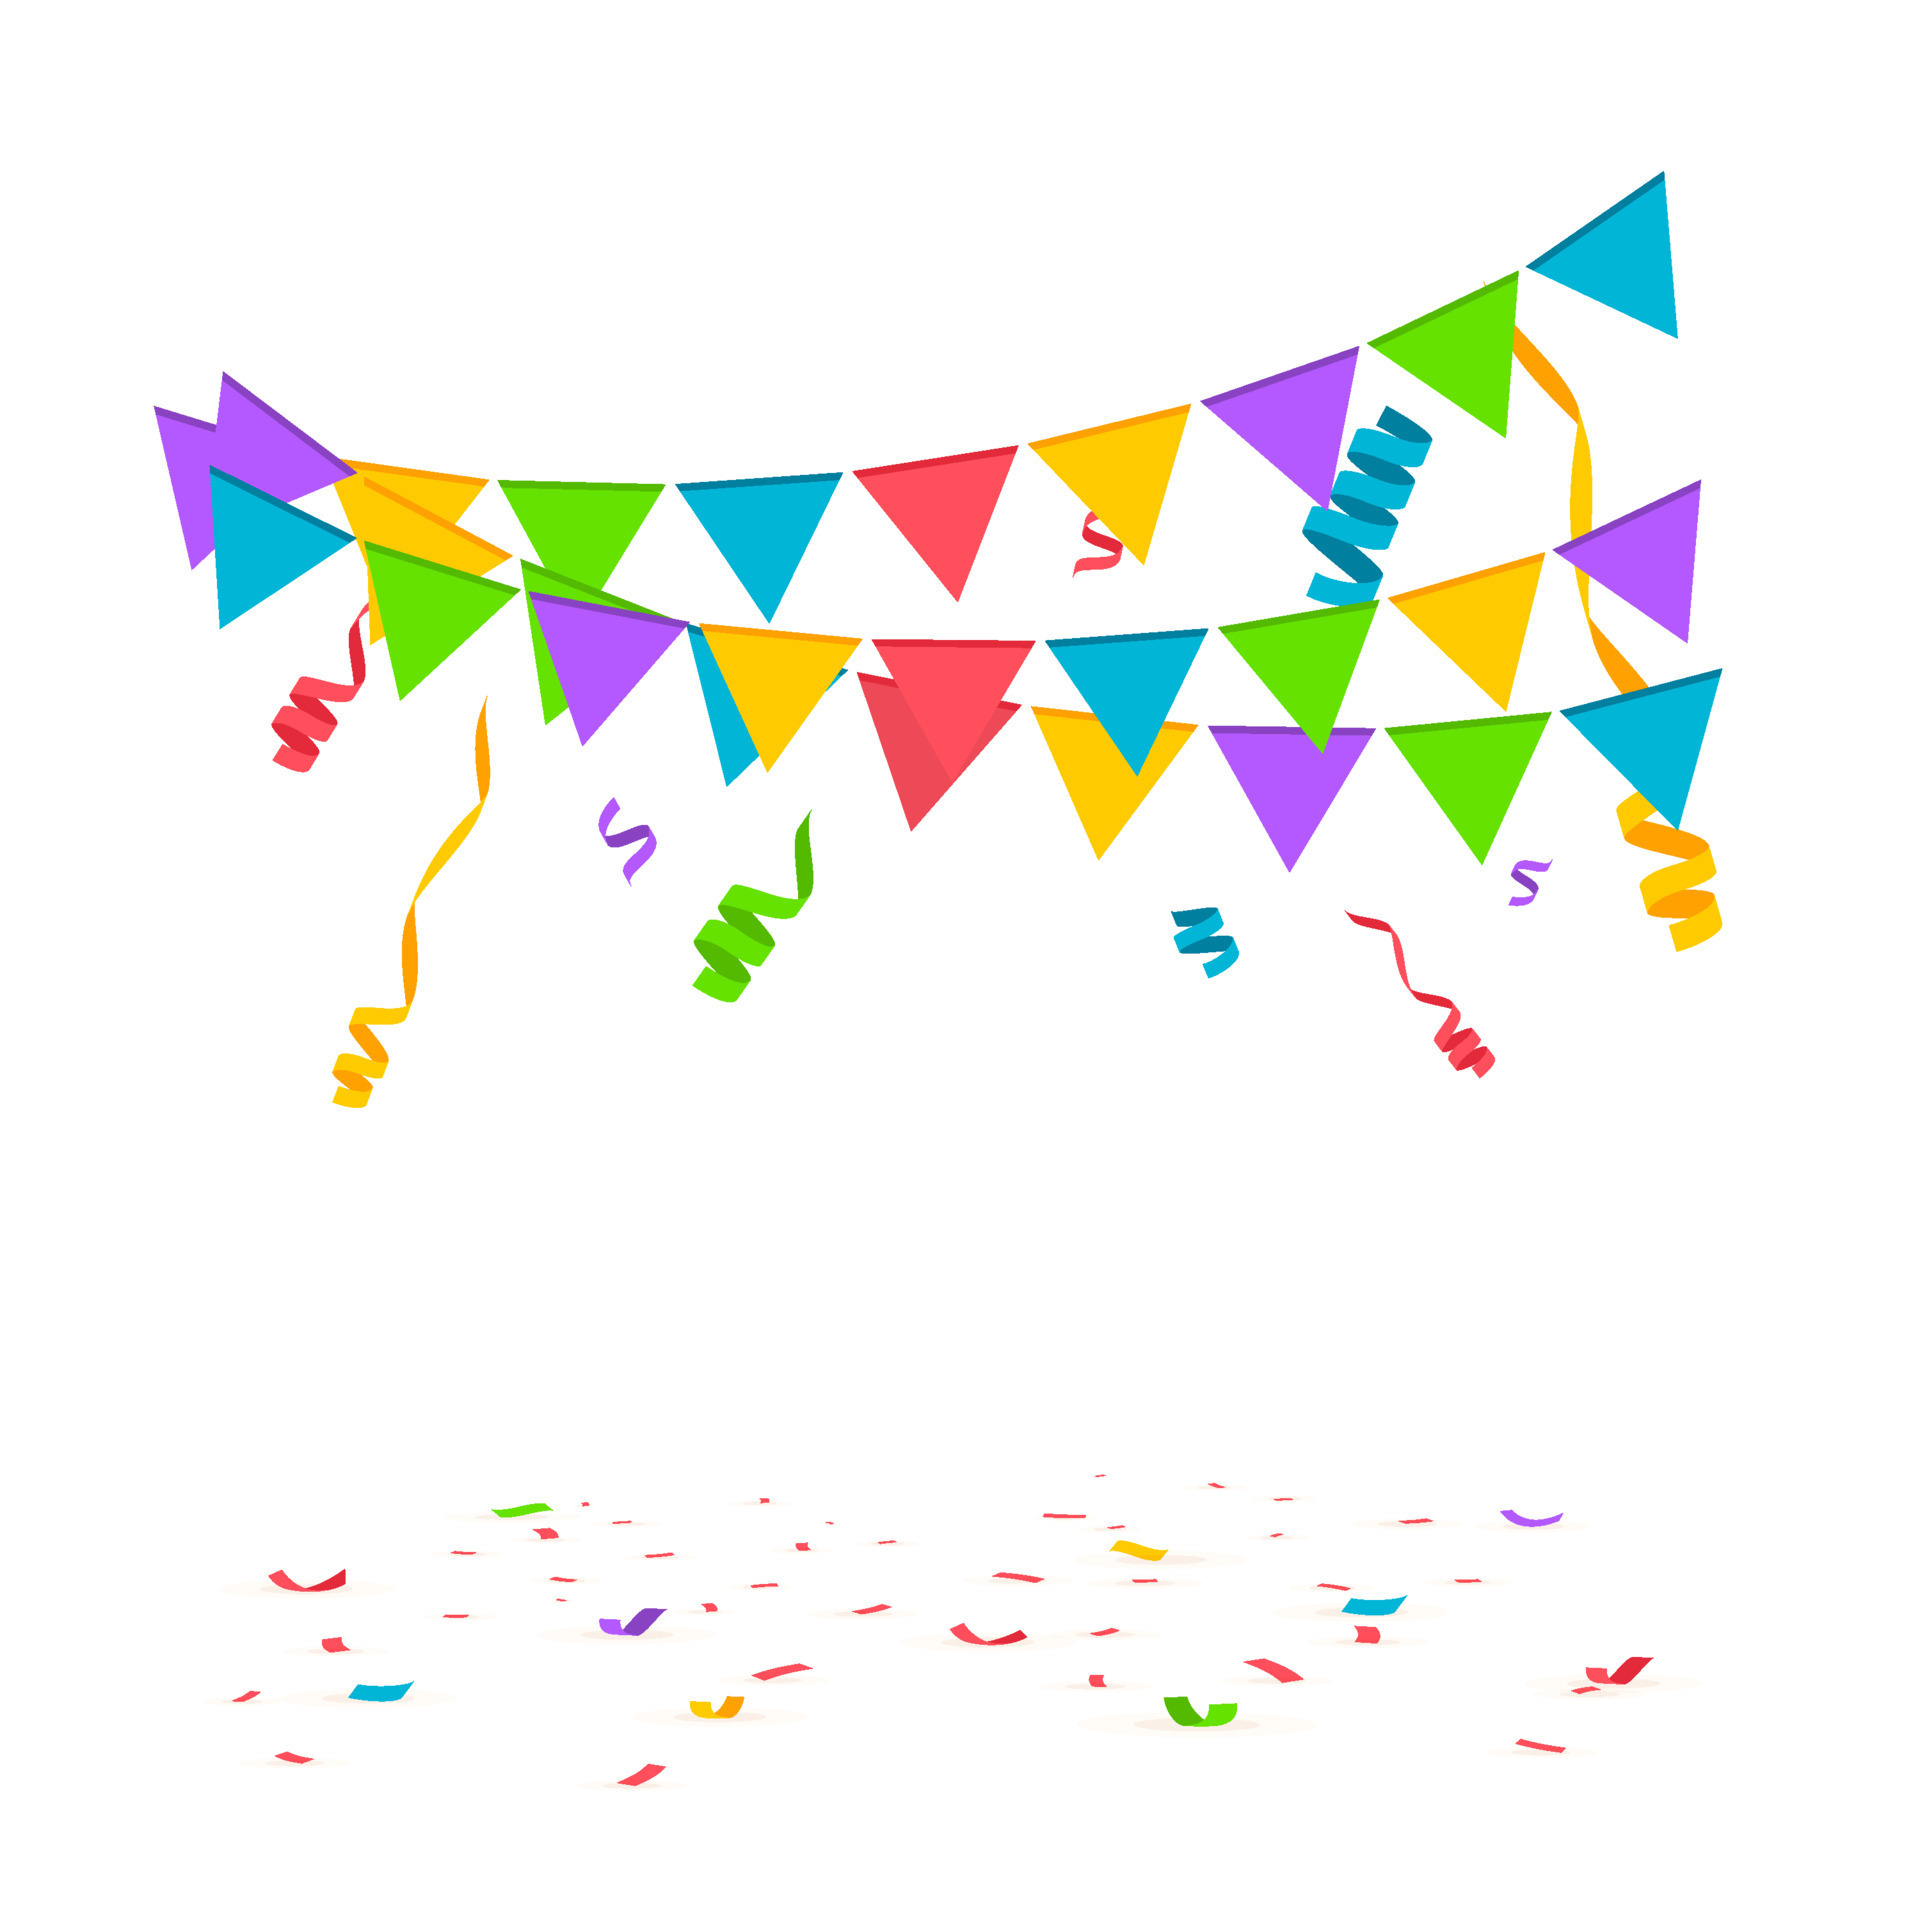 Uitmaken De schuld geven Wild Falling confetti with flag garlands, birthday vector background 15258990  Vector Art at Vecteezy